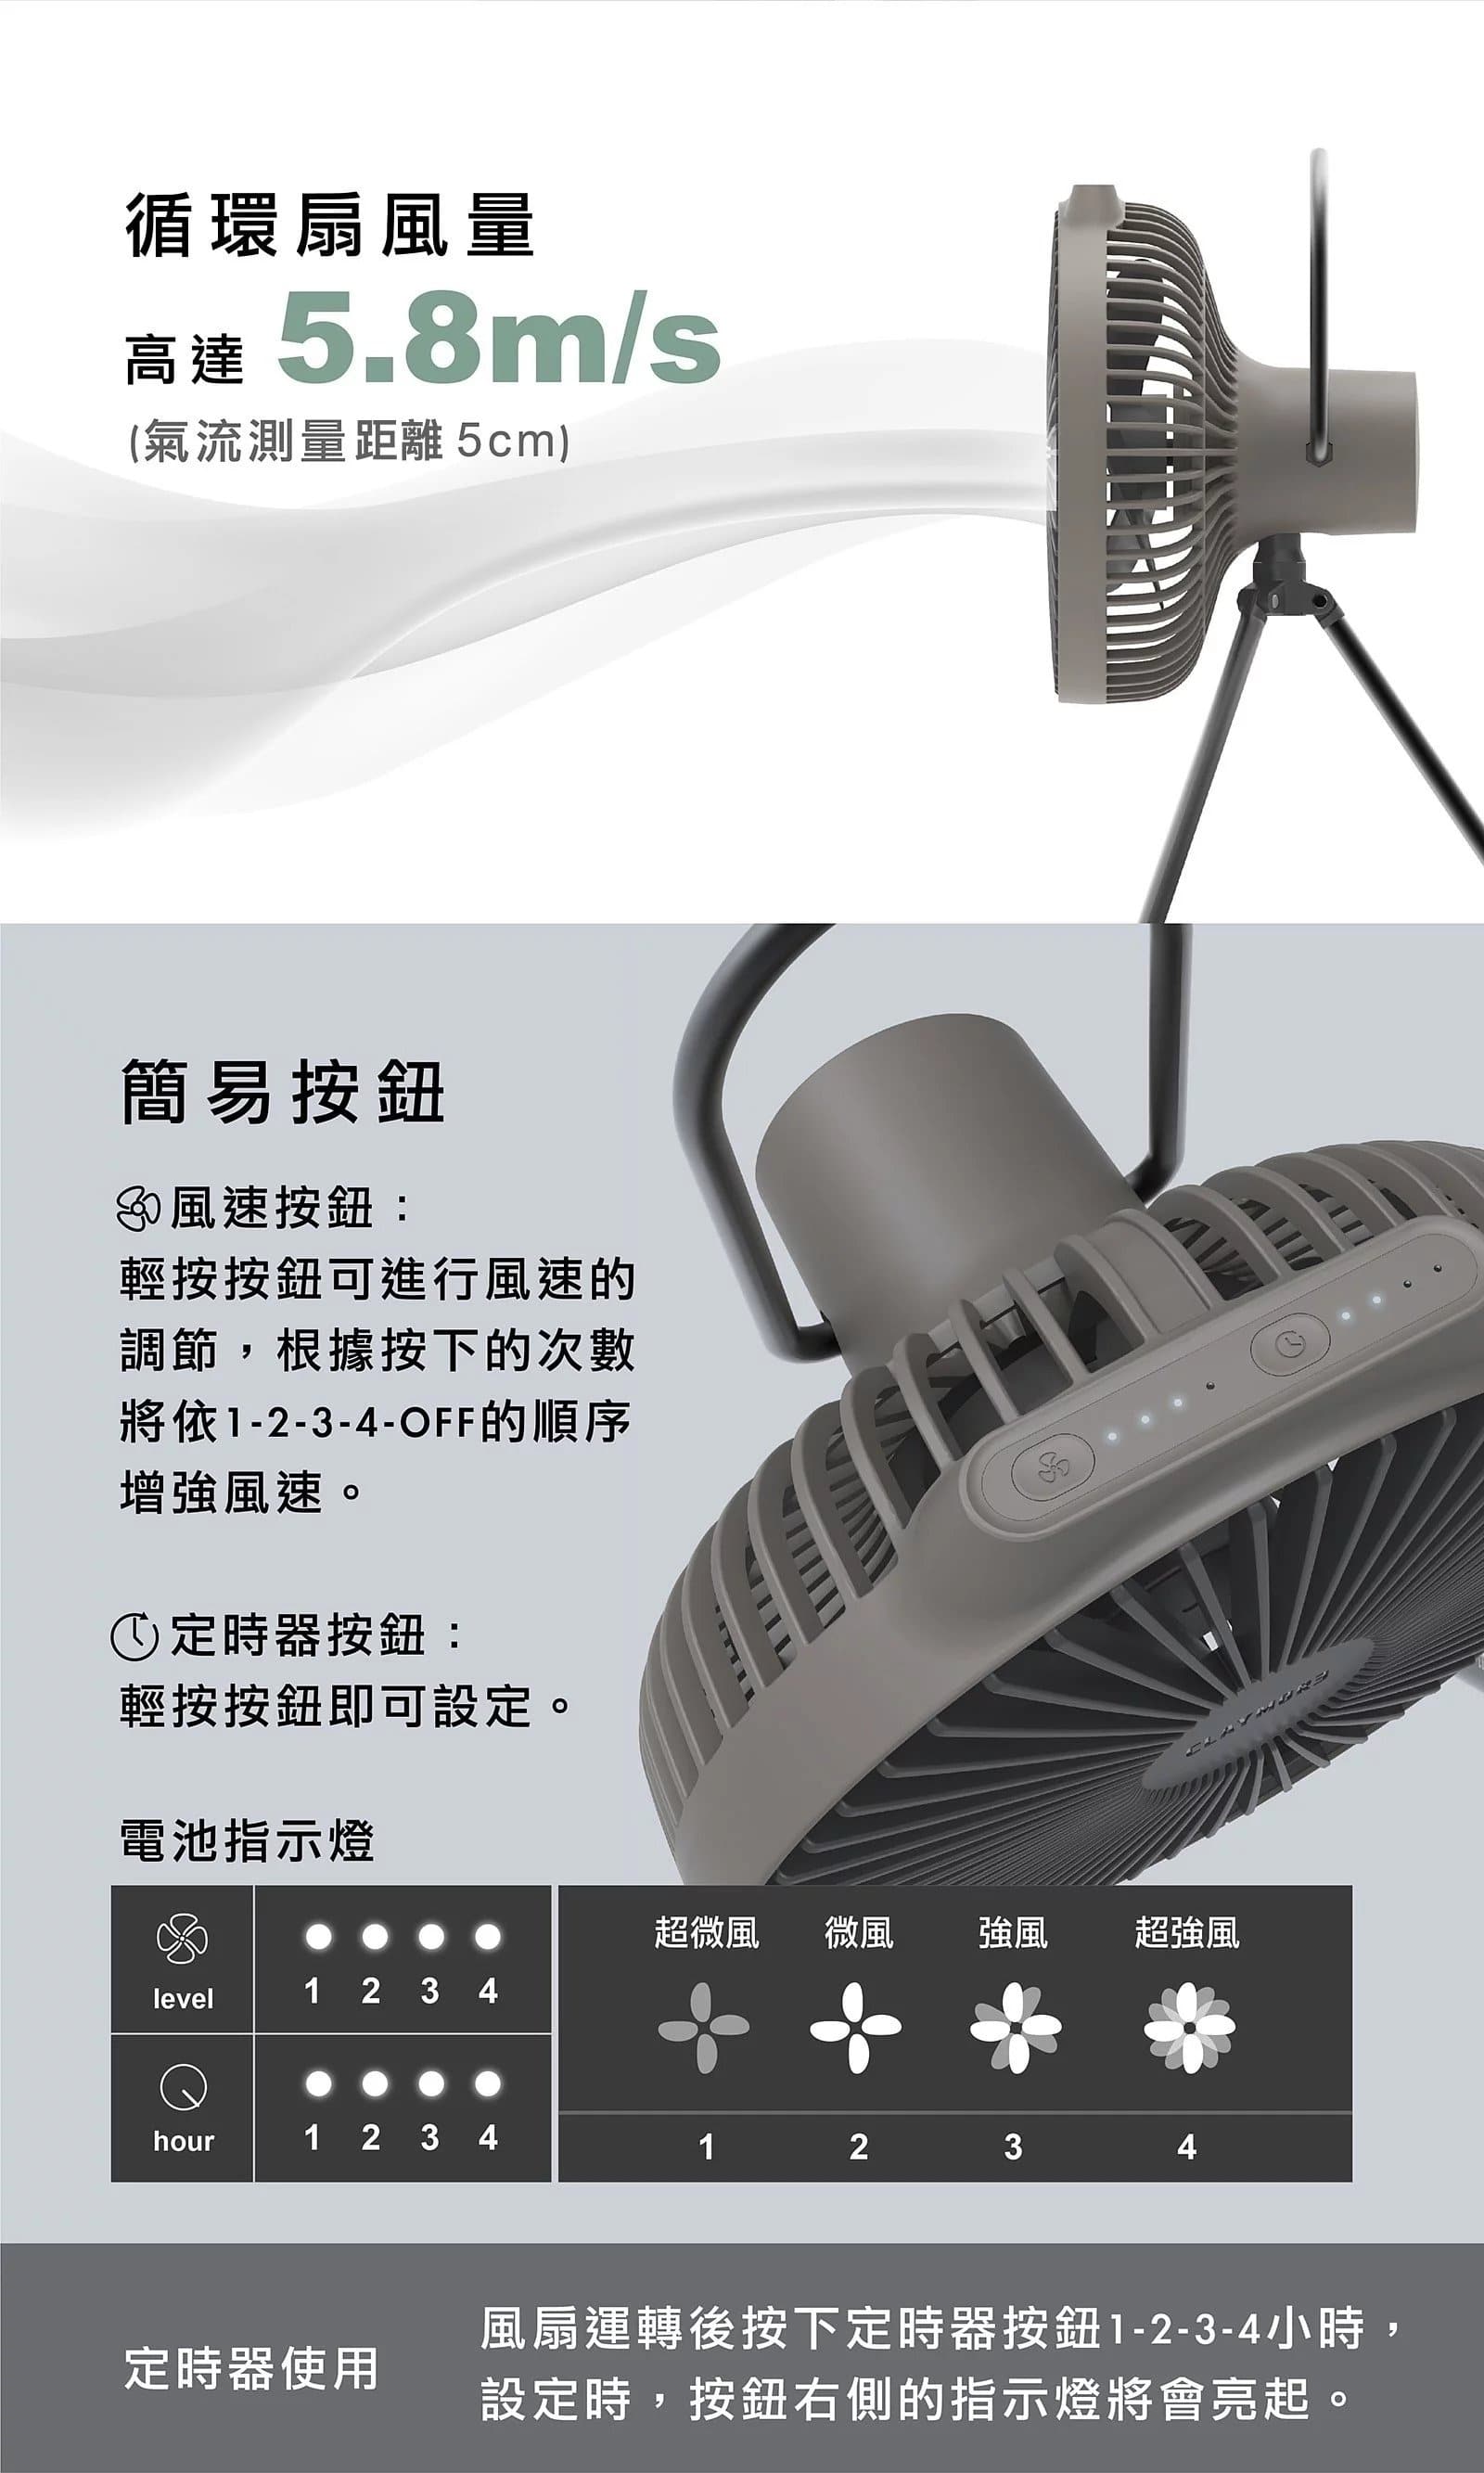 2022新版 Claymore Fan V600+  戶外露營風扇【限定黑色/限定沙色/普通灰黑】